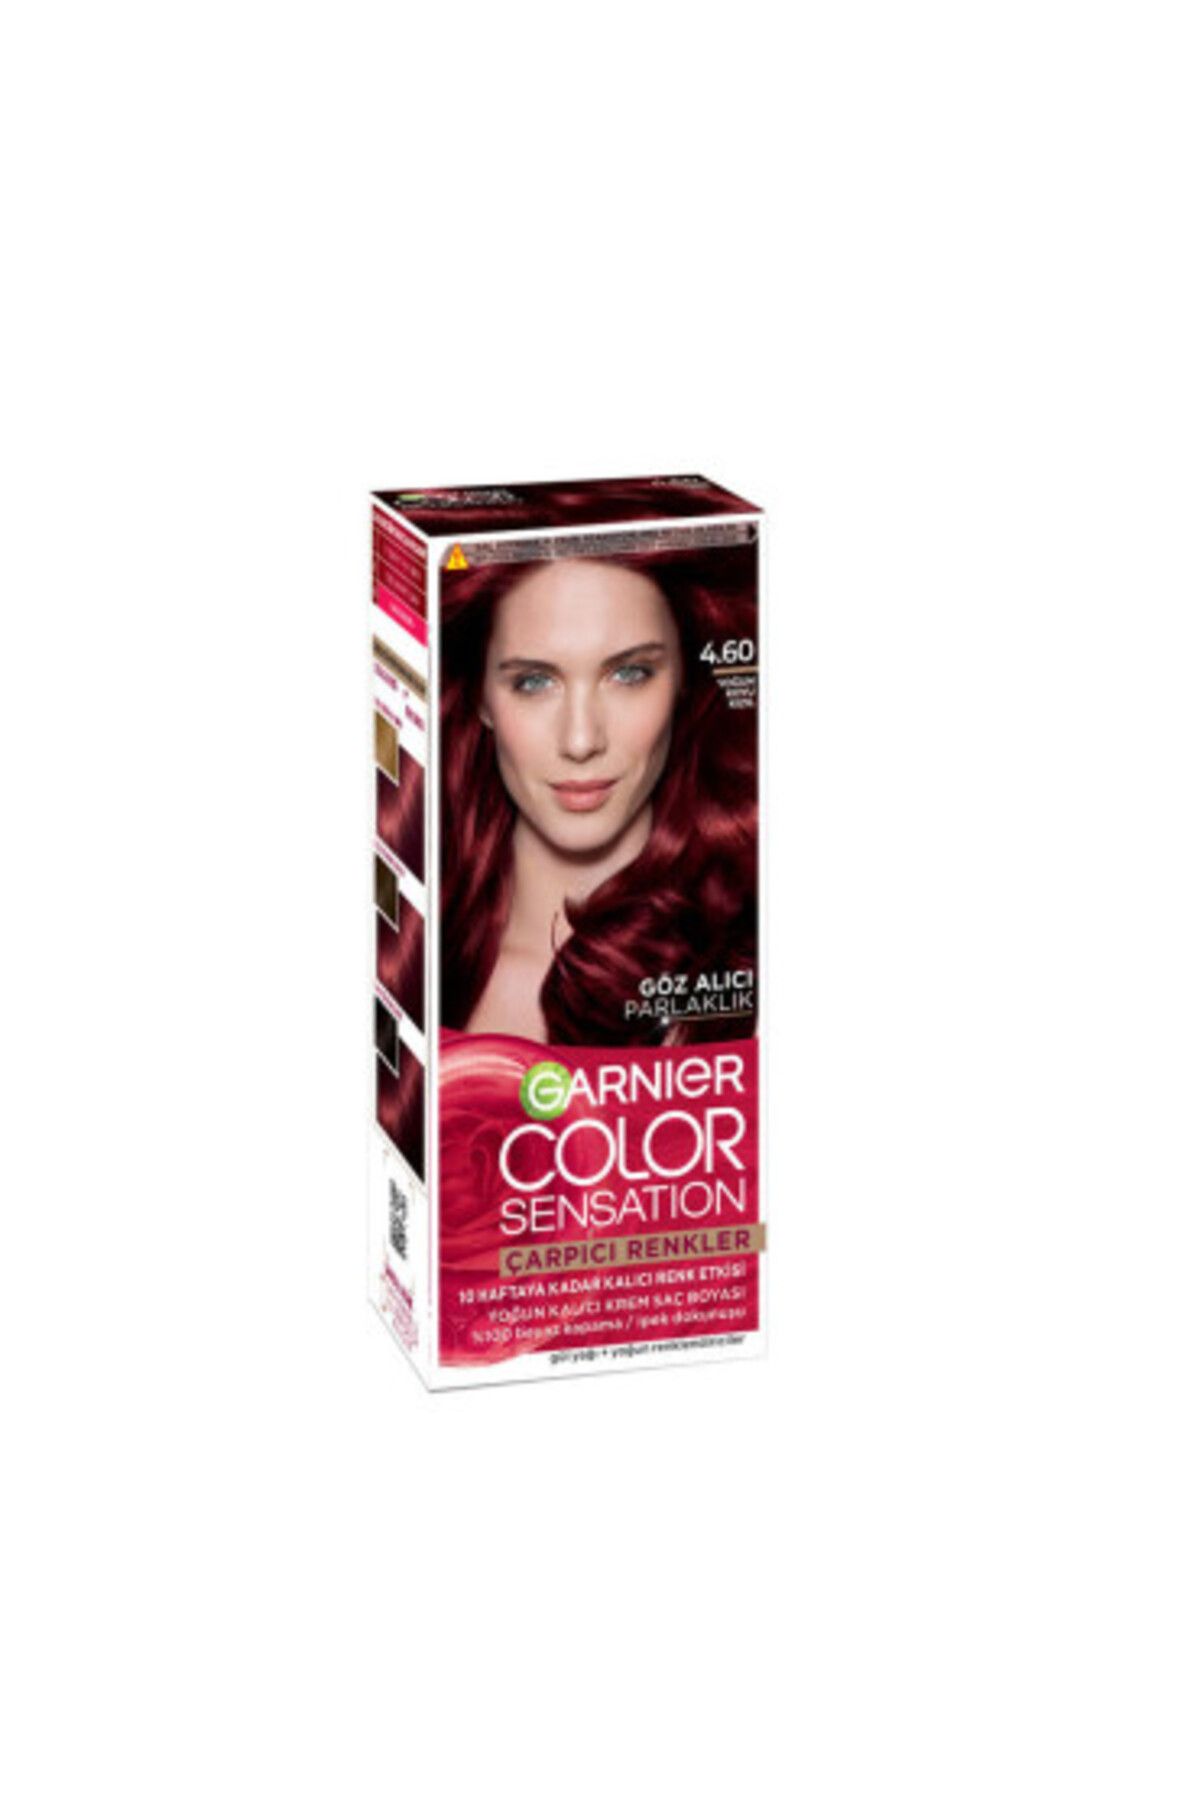 Garnier Color Sensation Çarpıcı Renkler Saç Boyası 4.60 Yoğun Koyu Kızıl ( 1 ADET )